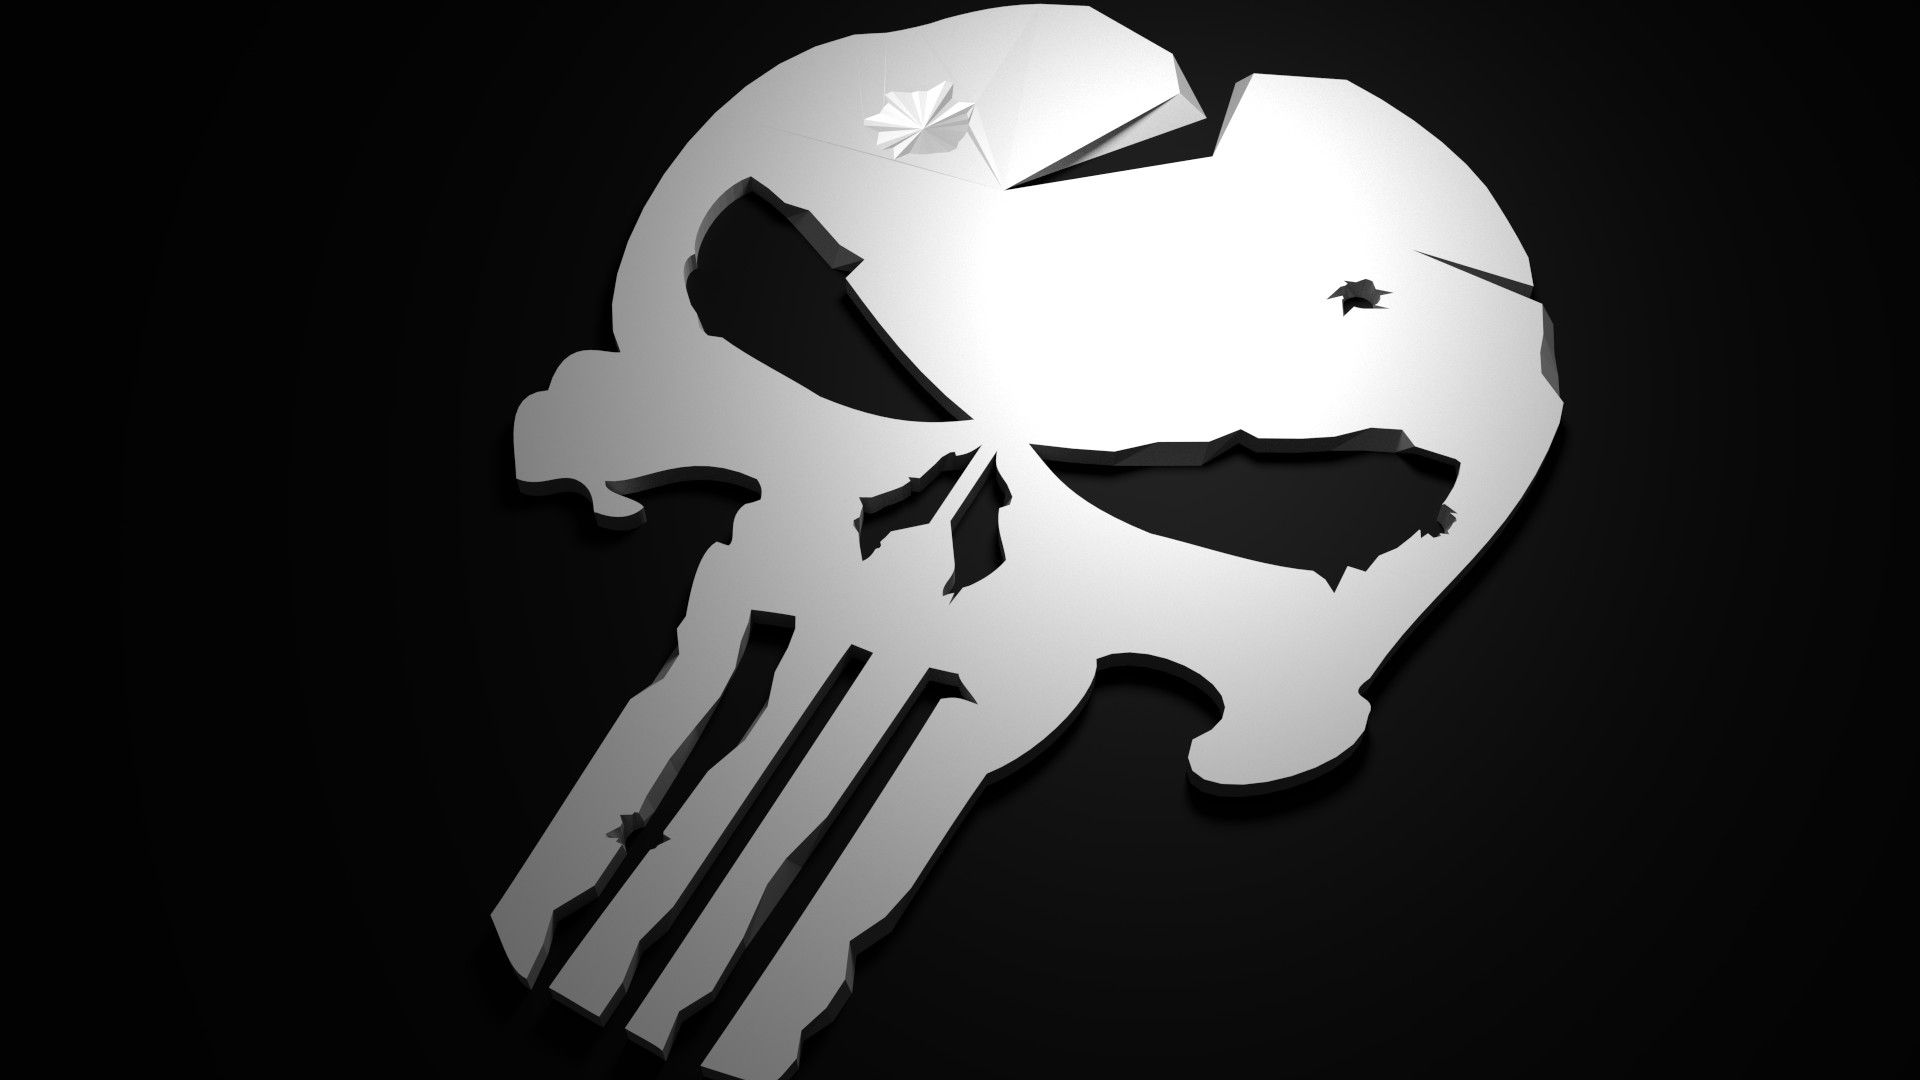 Chris Kyle Punisher Logo Wallpaper image. Cartoon wallpaper